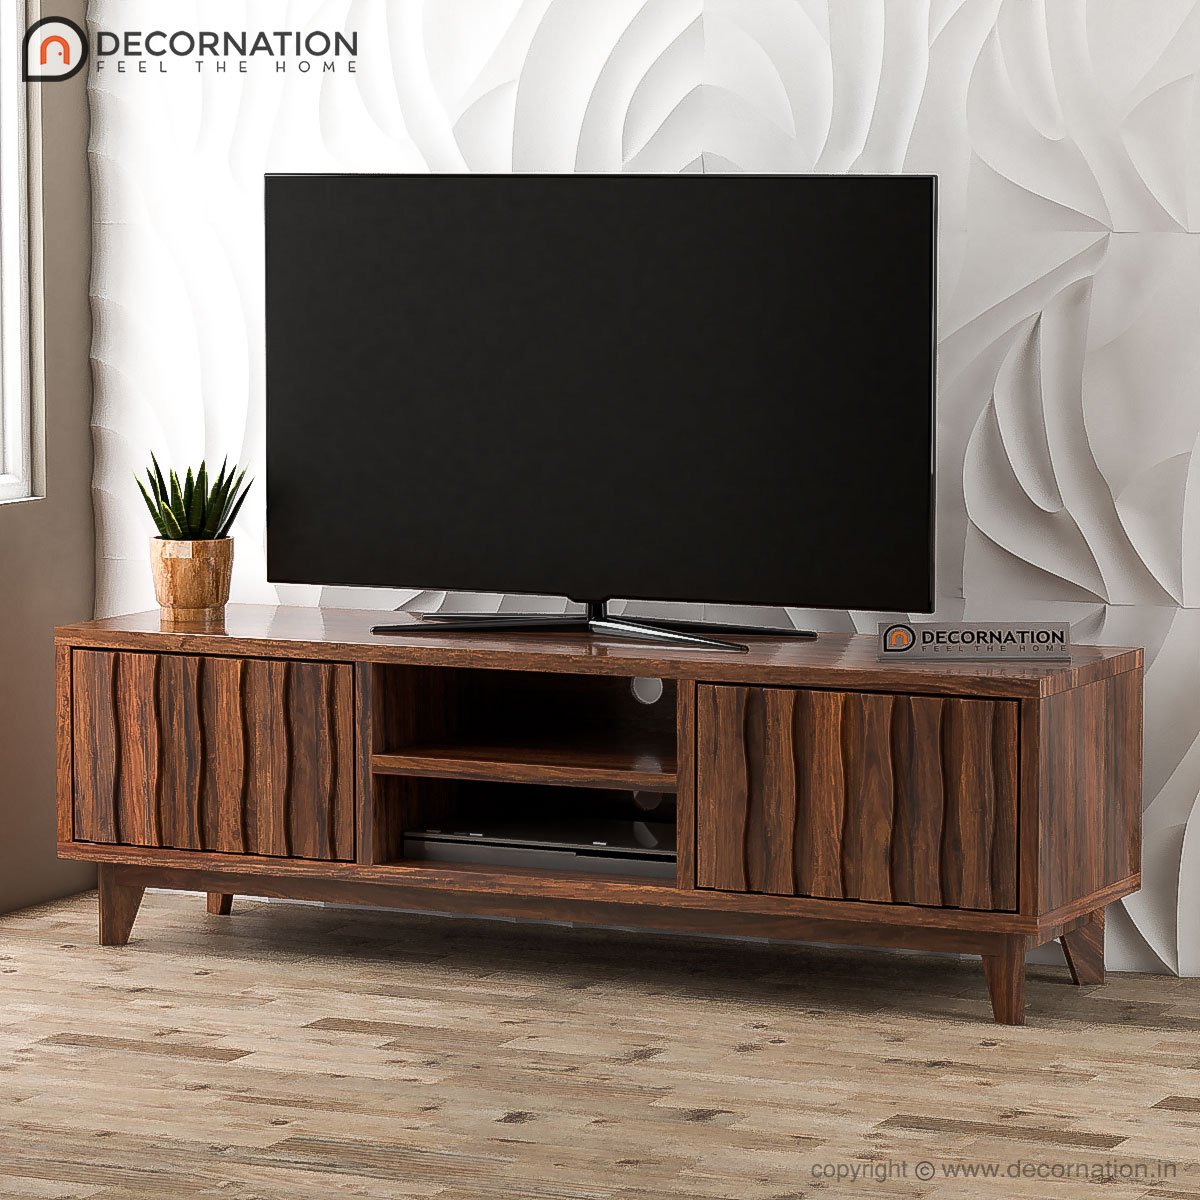 Peder Wood Designer Storage TV Table – Natural Finish